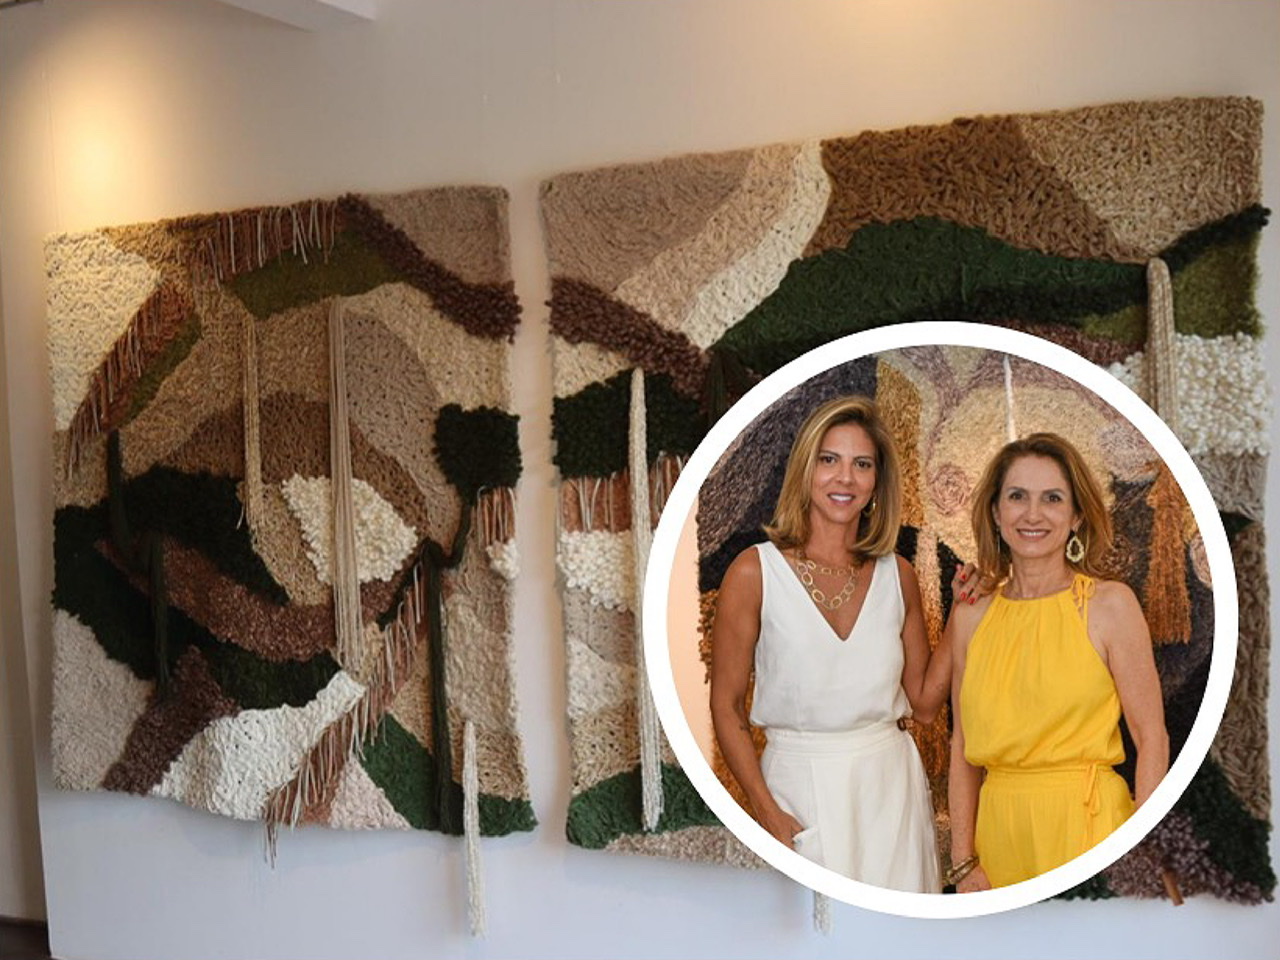 Giro de fotos: Pena Cal Galeria recebe exposição da artista Marilene Ropelato